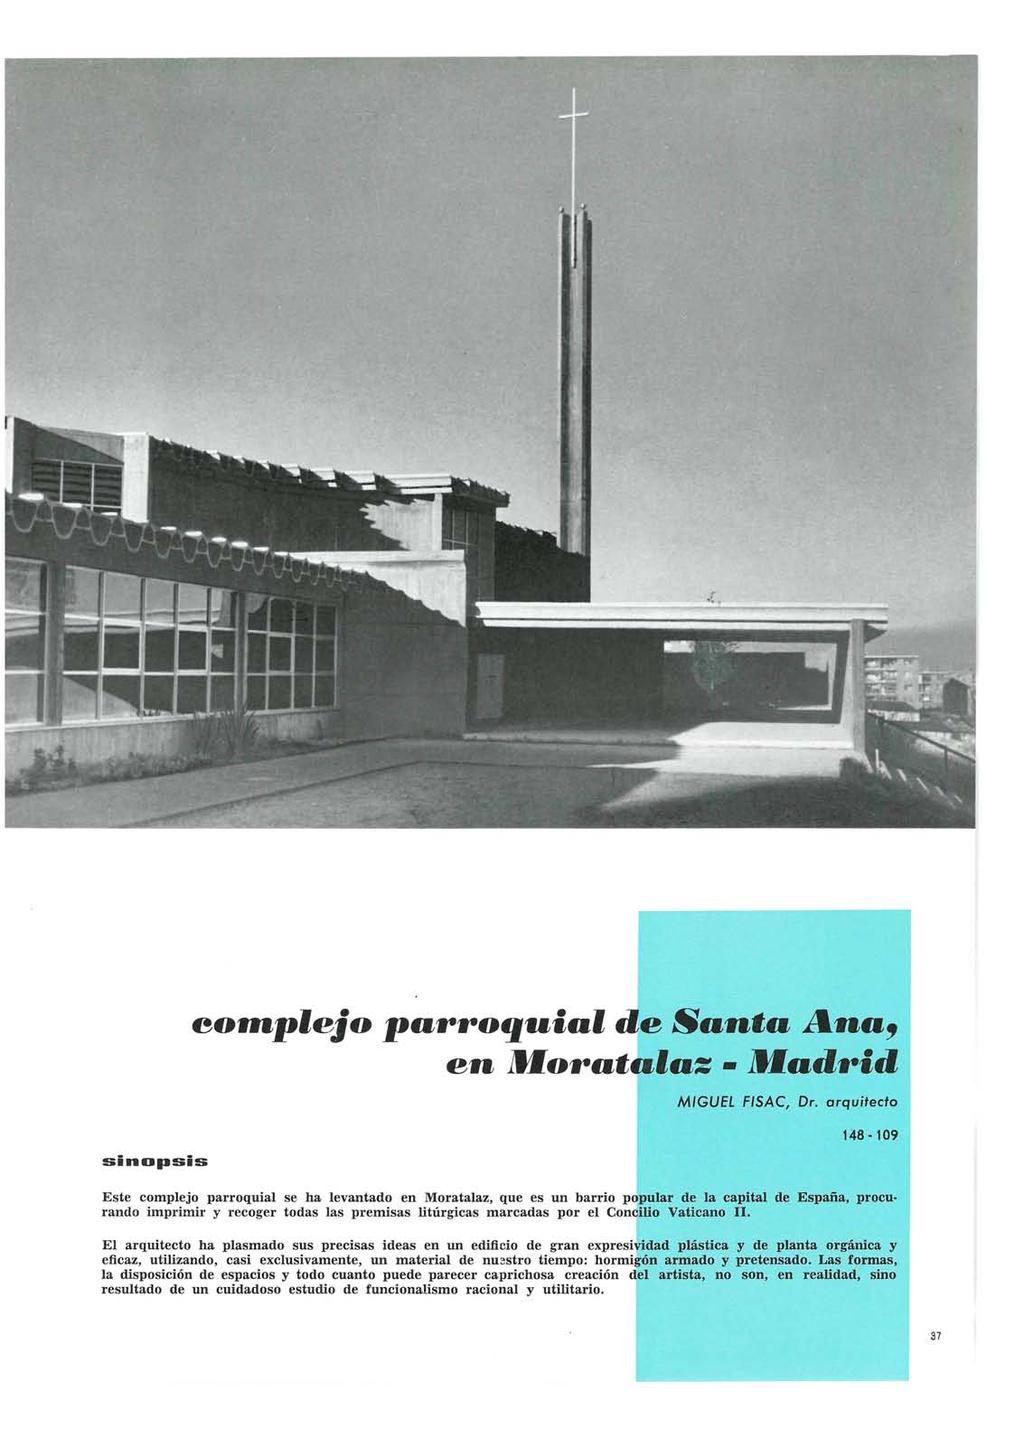 Informes de la Construcción Vol. 20, nº 191 Junio de 1967 sinopsis eoffijplejo p Bw*M^aquiai d e Santa Ana^ en MMaw^atalaz - 3Madw*id MIGUEL FiSAC, Dr.